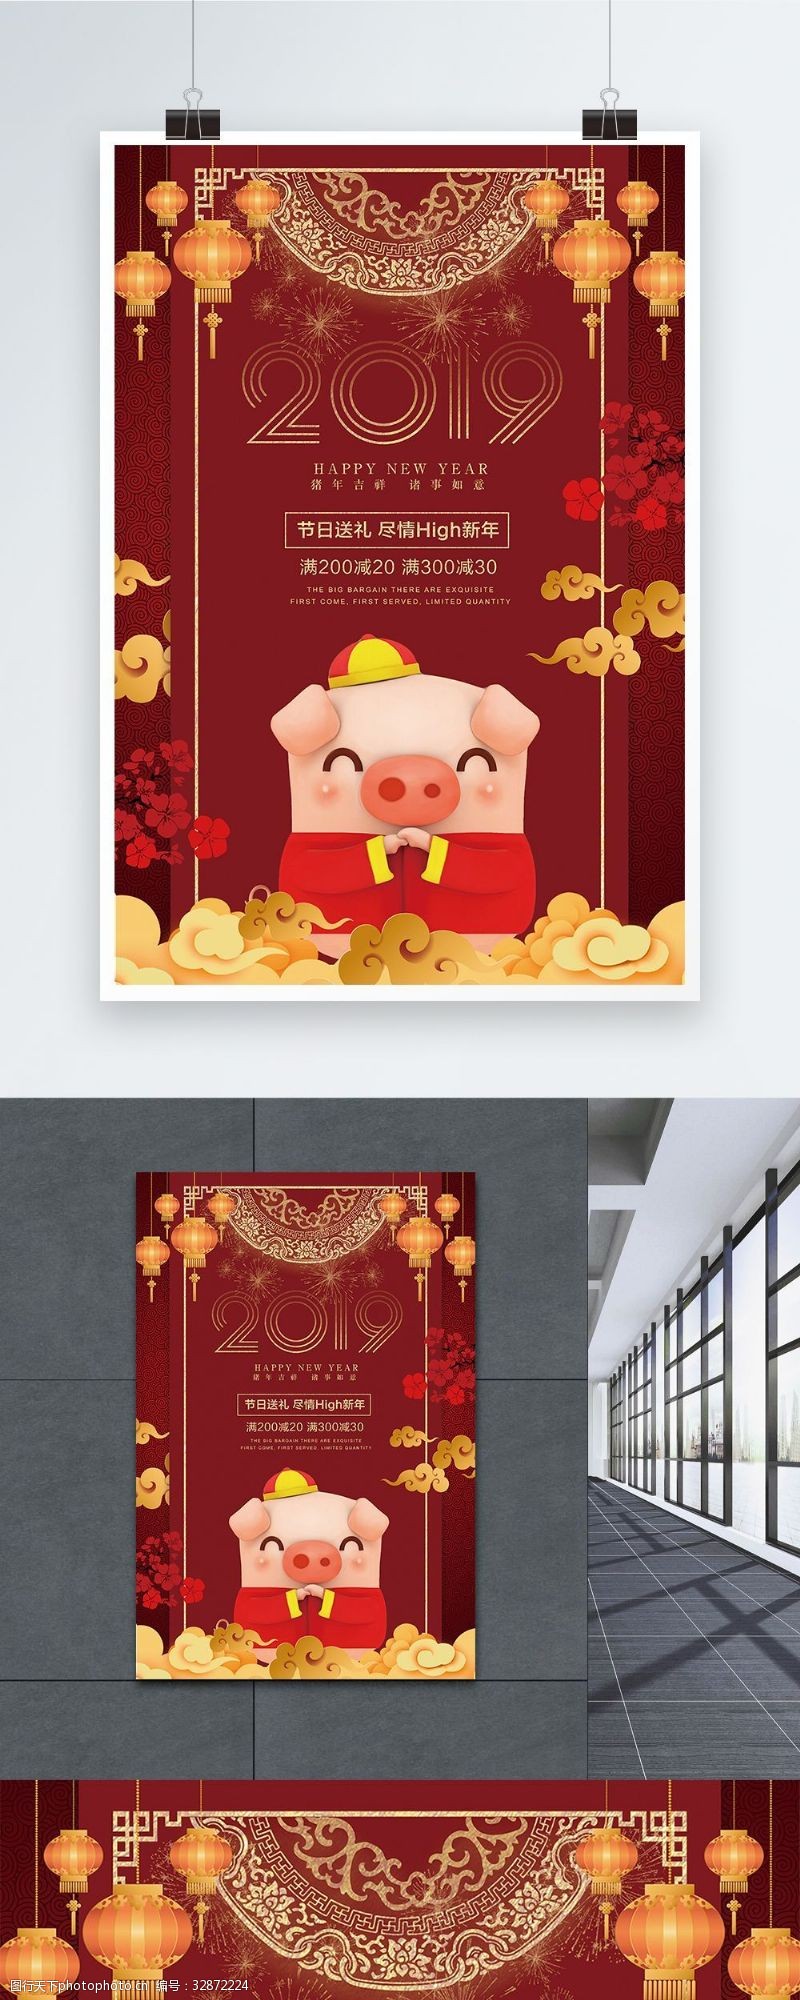 荣耀20192019猪年吉祥新年促销海报